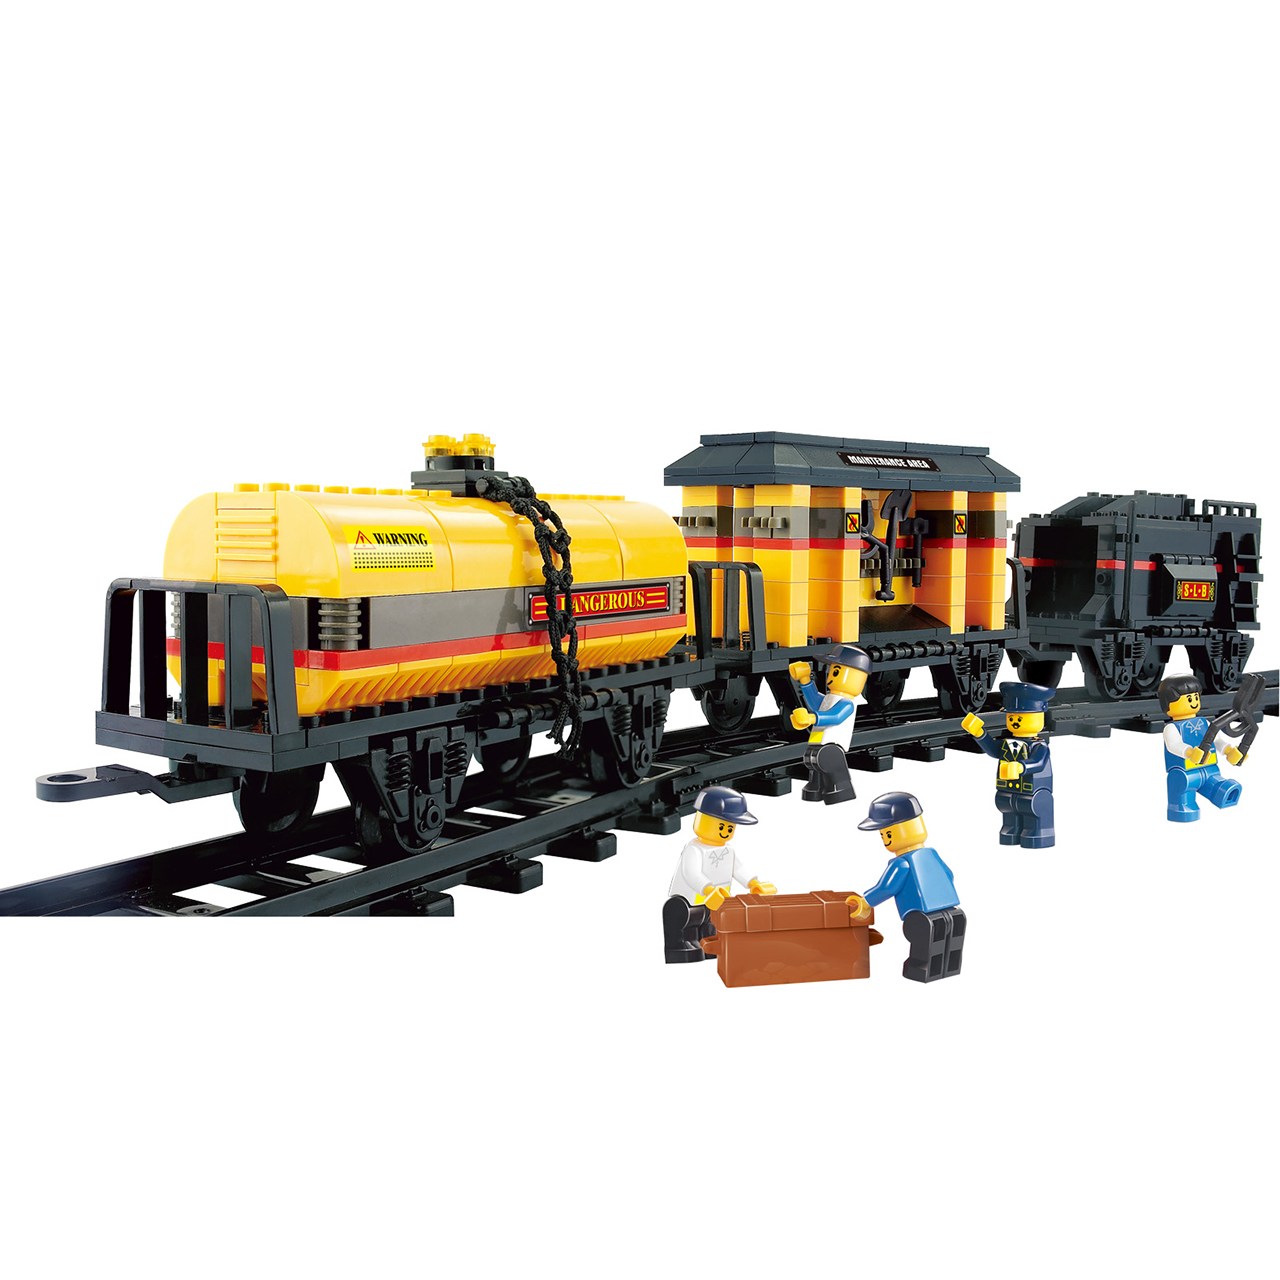 اسباب بازی ساختنی اسلوبان مدل Special Train M38-B0233